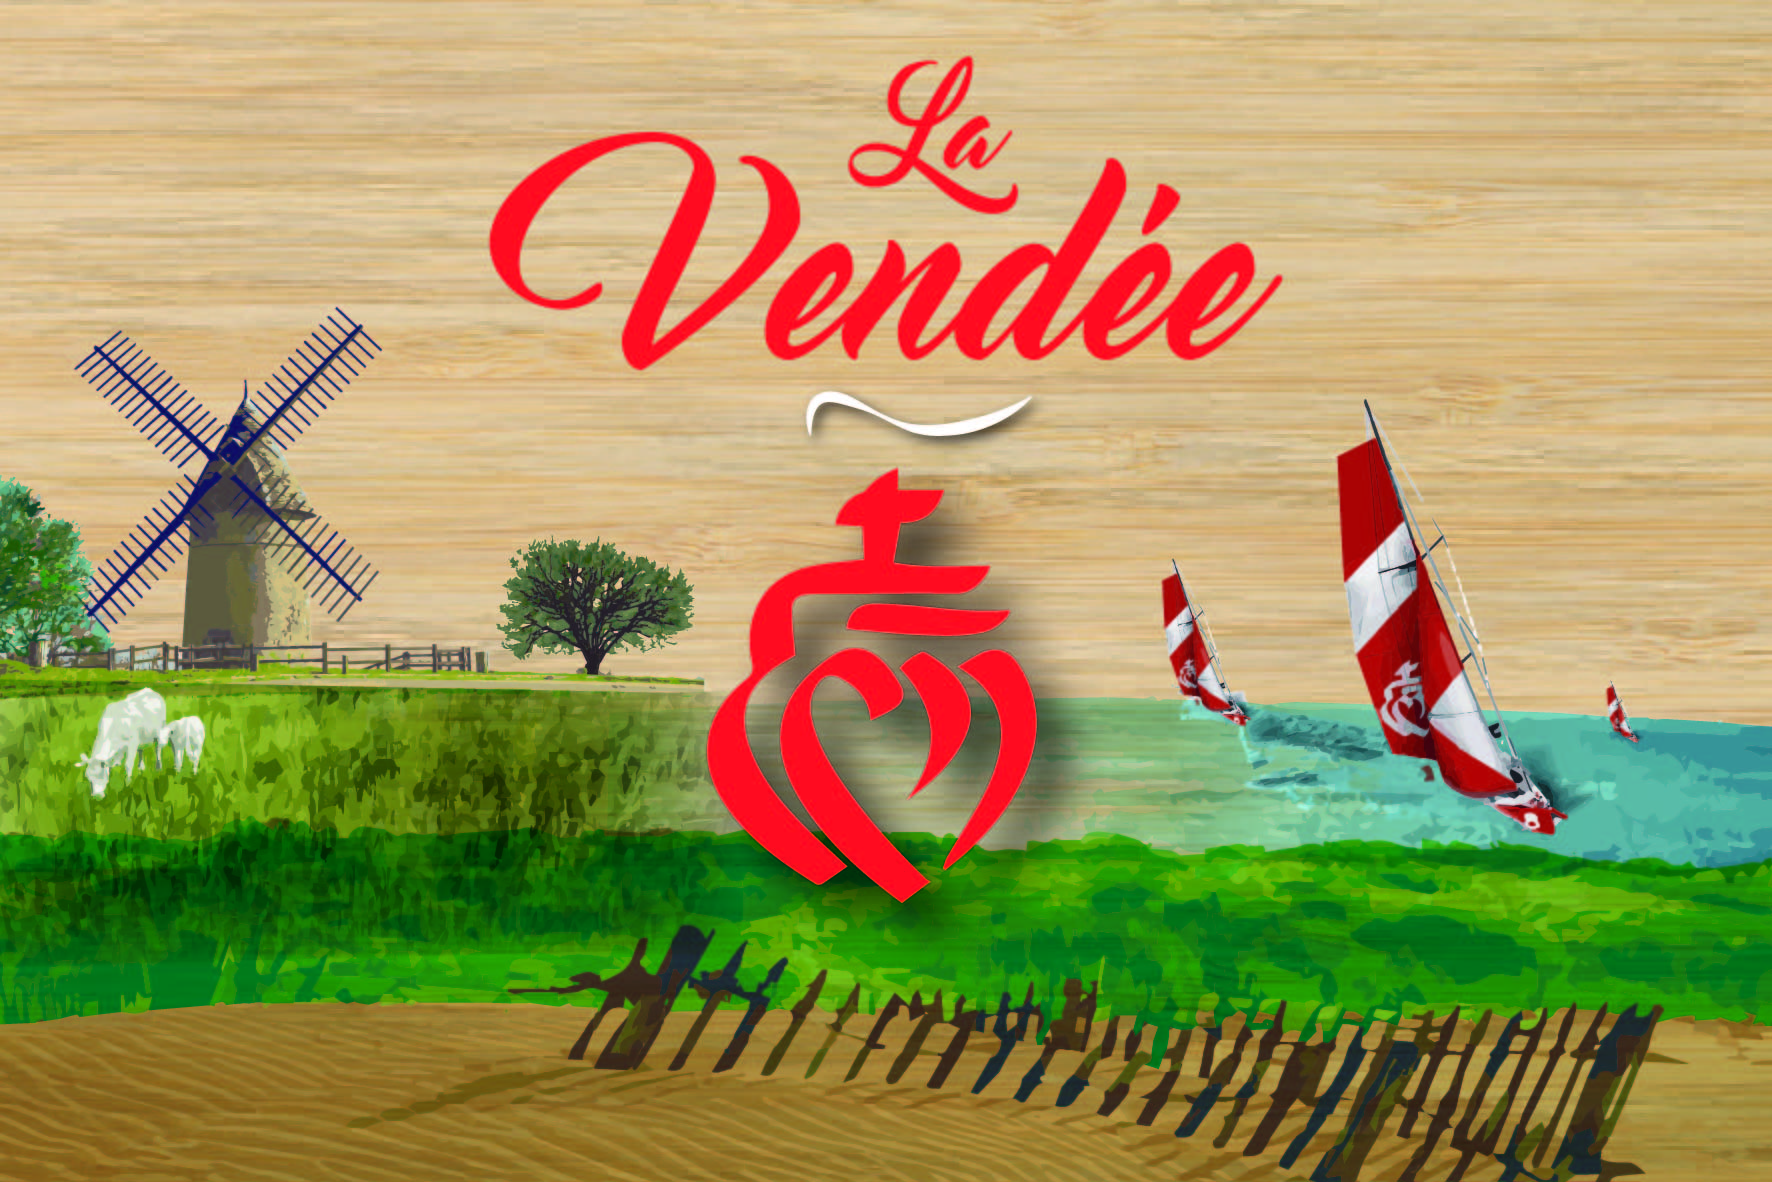 carte postale bois paysage Vendée